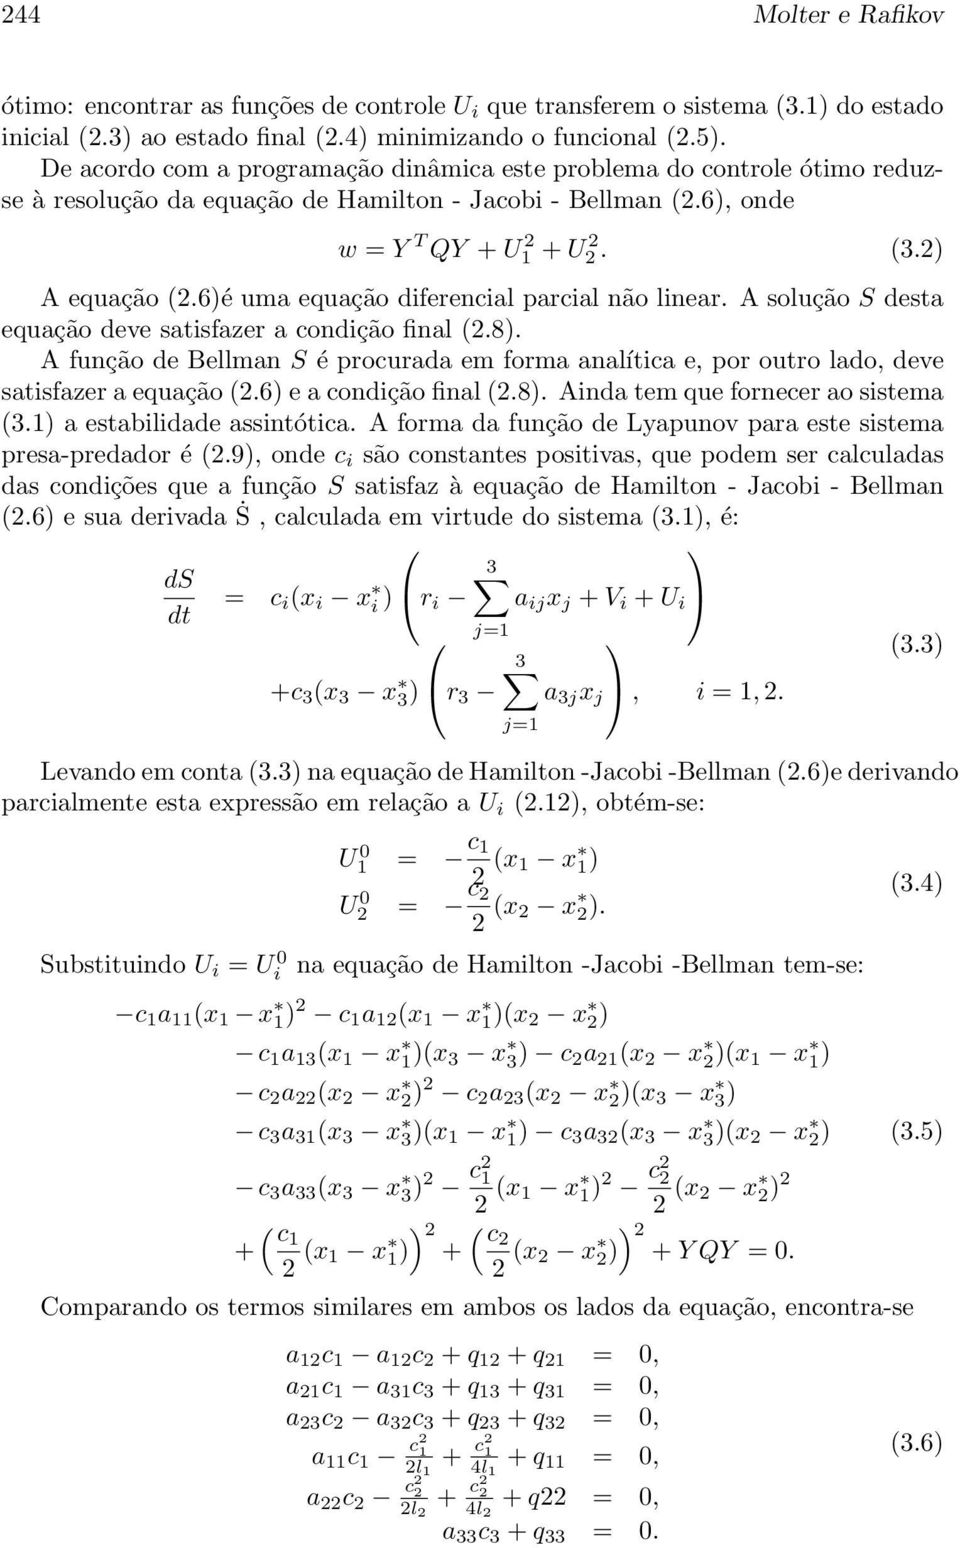 6)é uma equação diferencial parcial não linear. A solução S desta equação deve satisfazer a condição final (2.8).